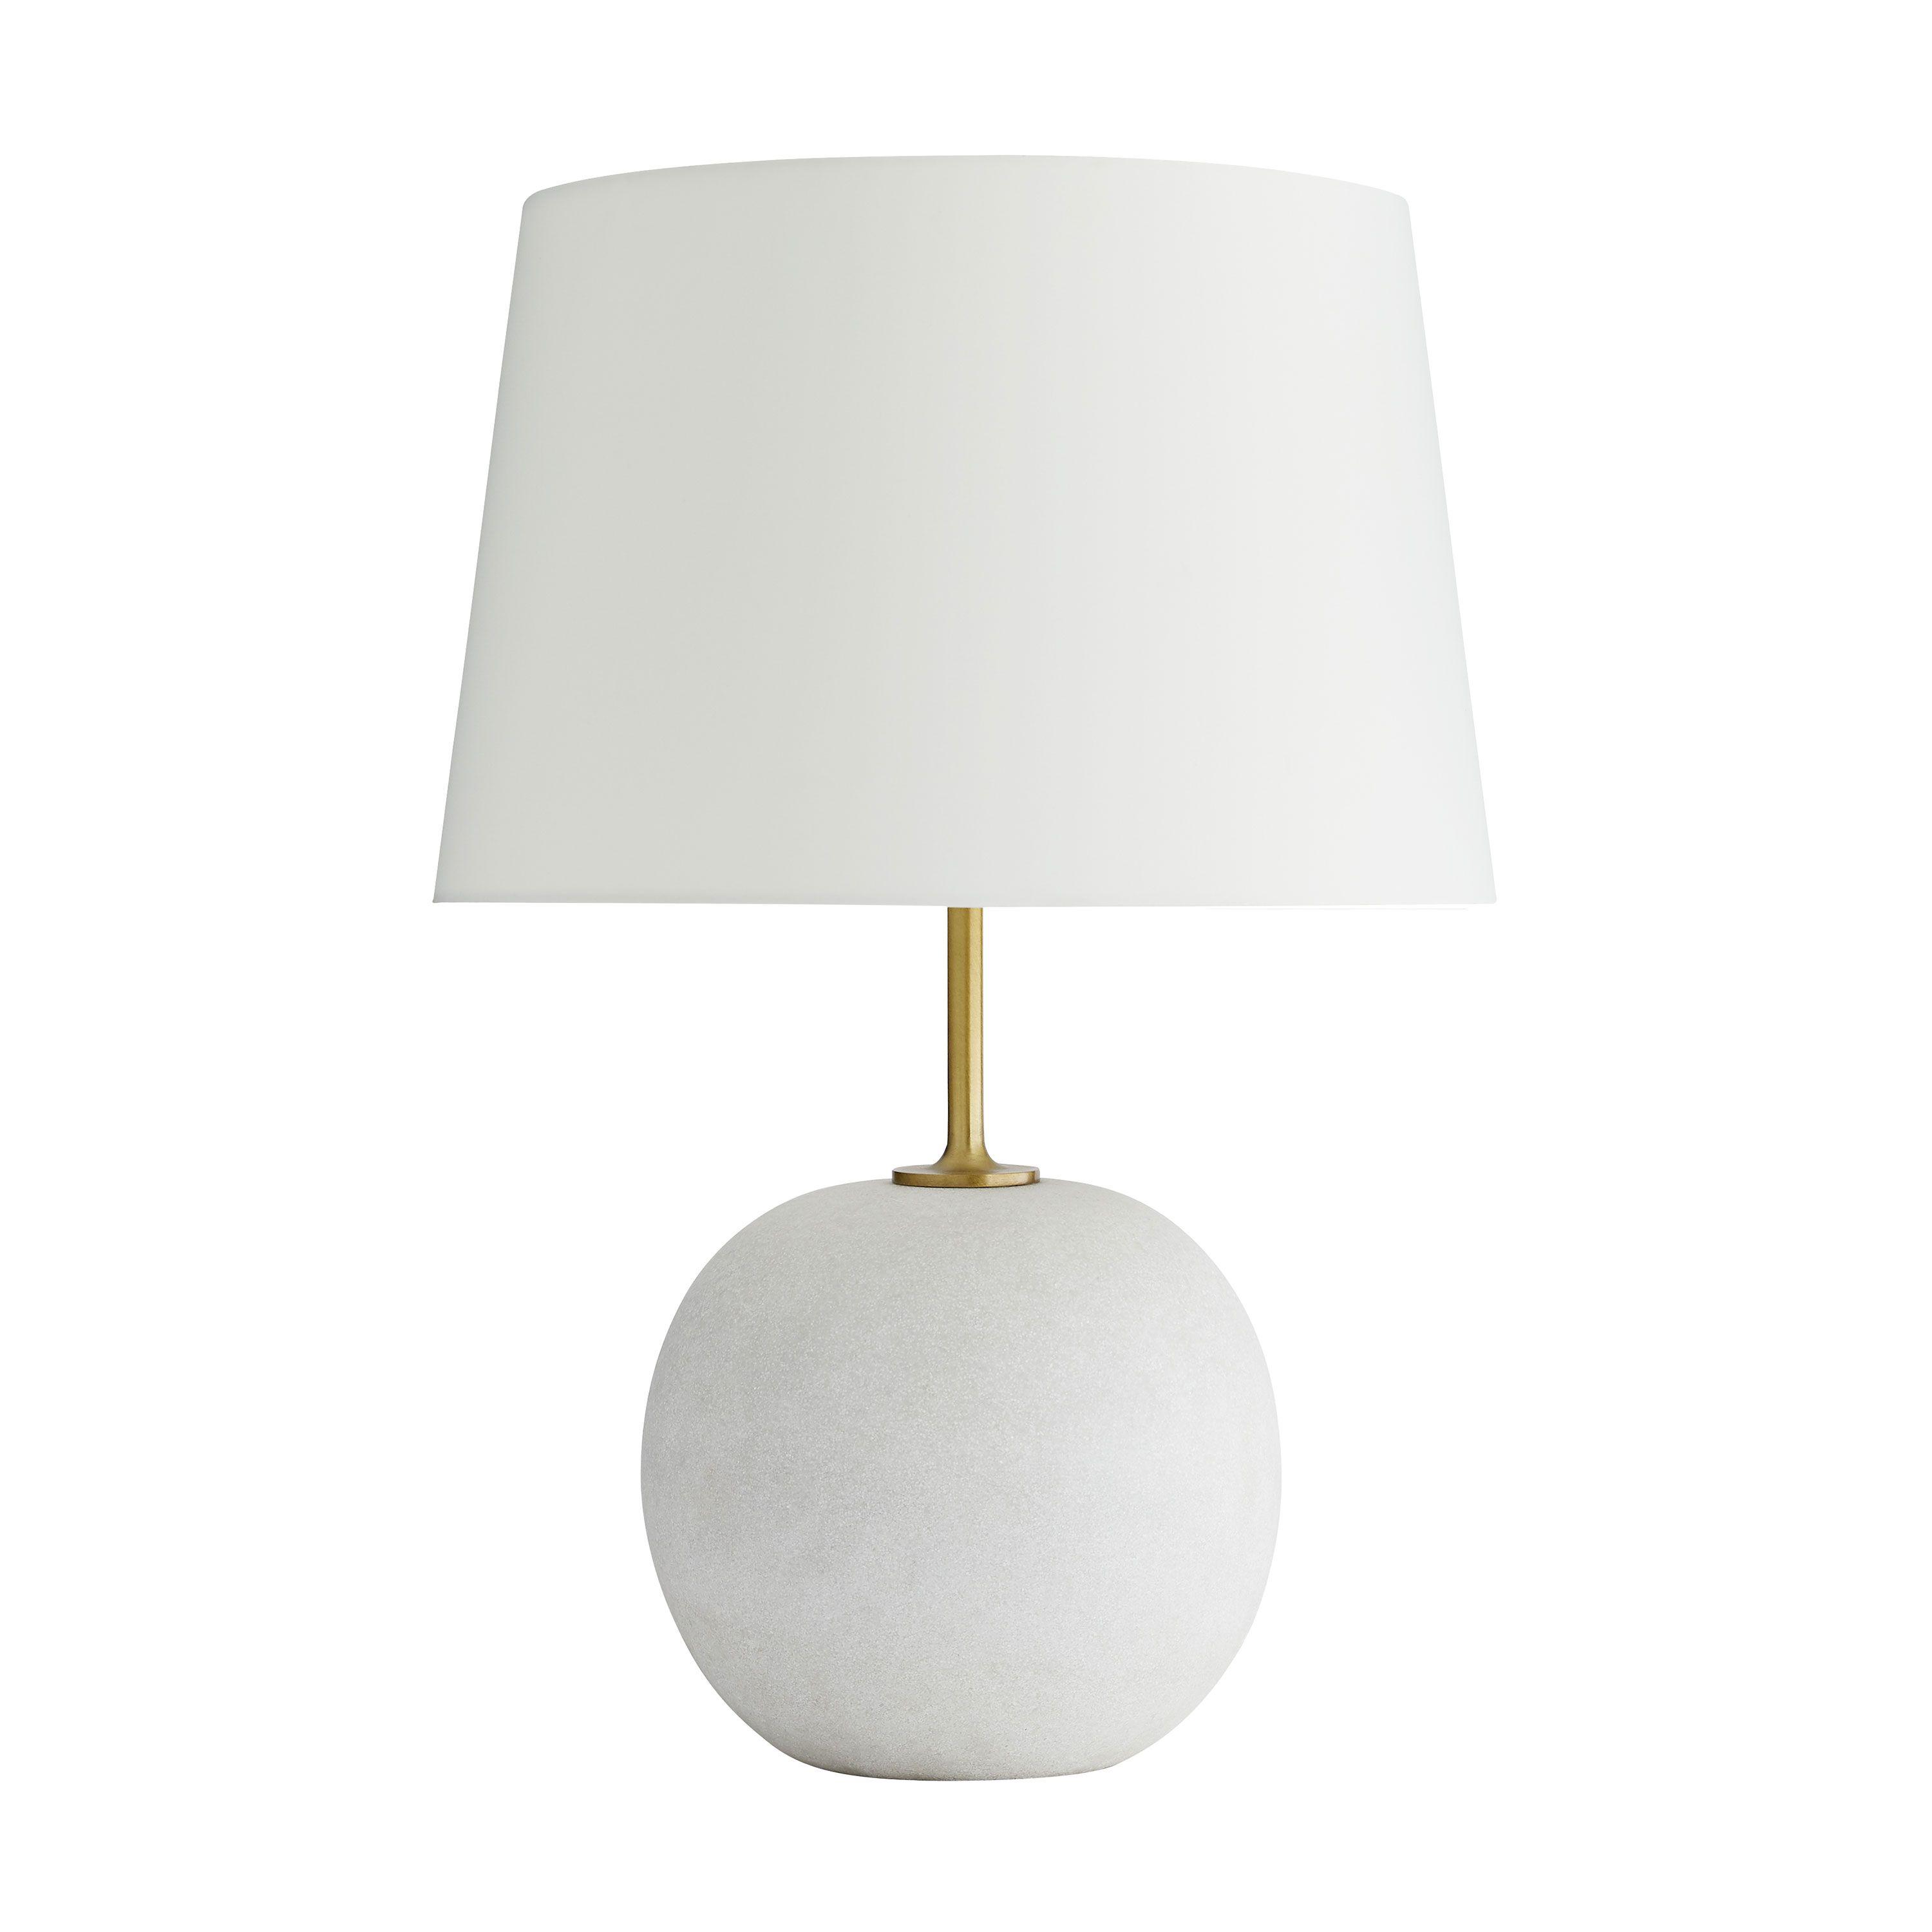 Купить Настольная лампа Colton Lamp в интернет-магазине roooms.ru